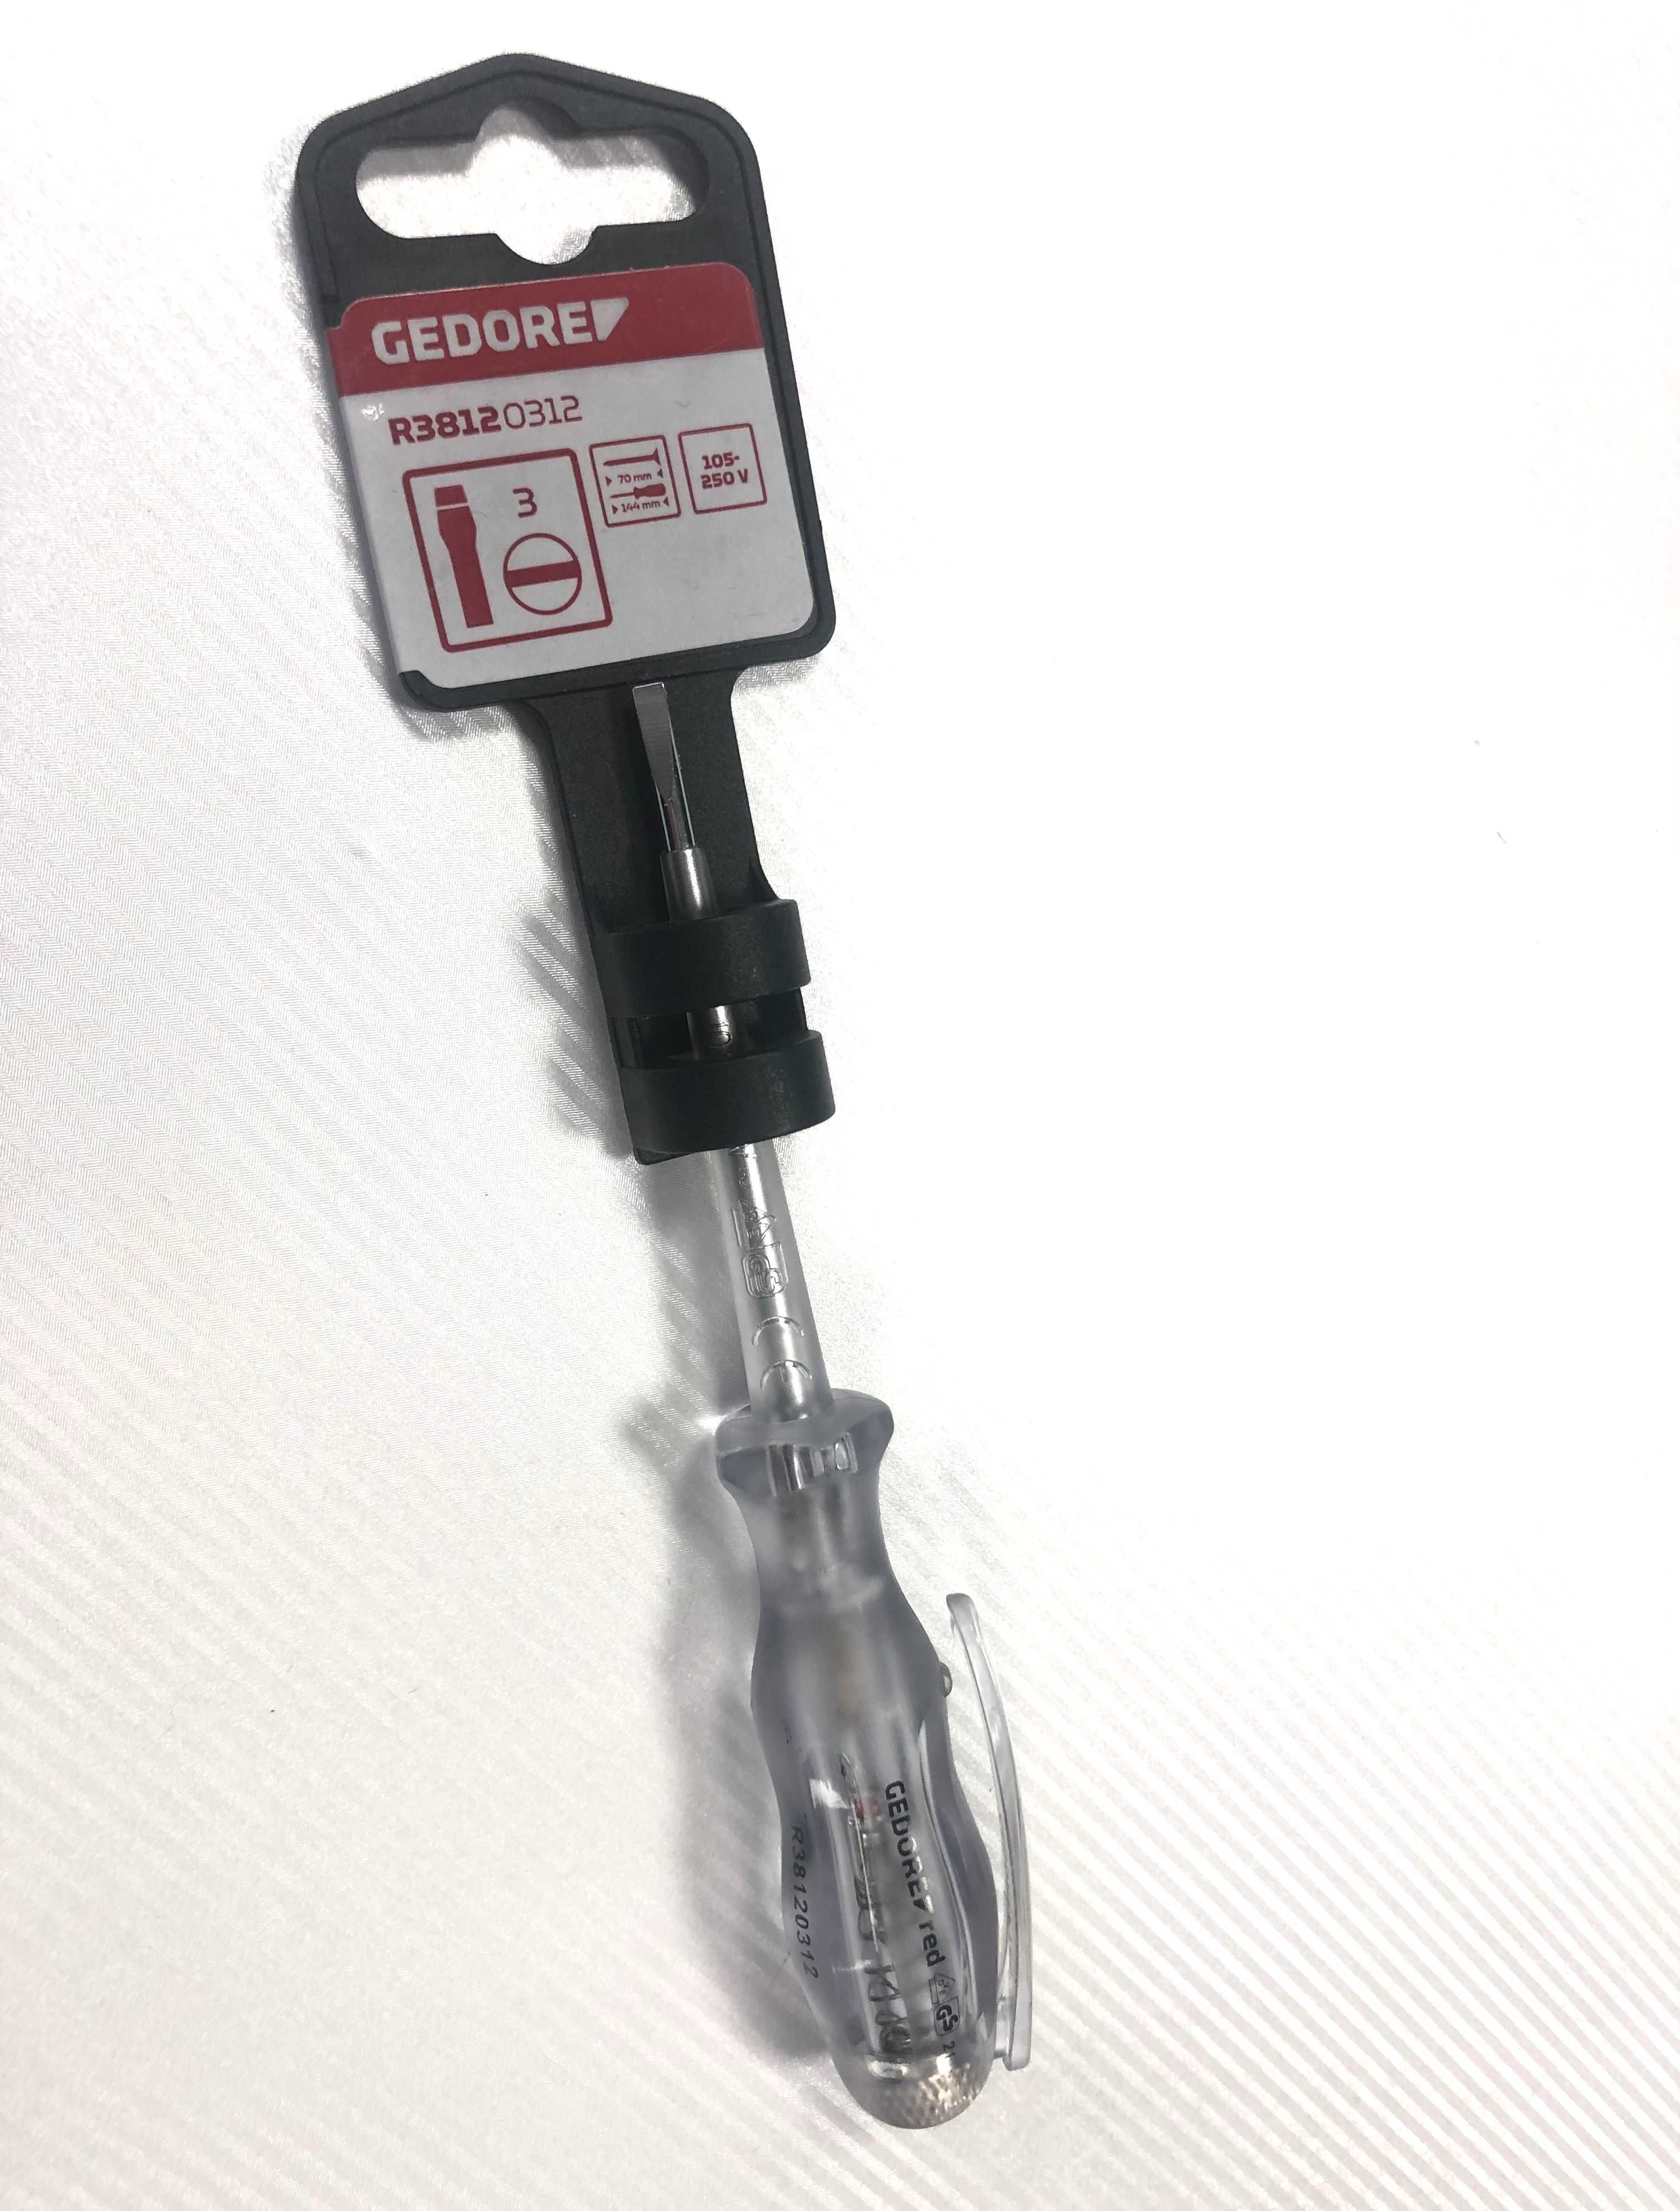 GEDORE Red тест отвертка, фазомер, 105 - 250 V, внос от Германия